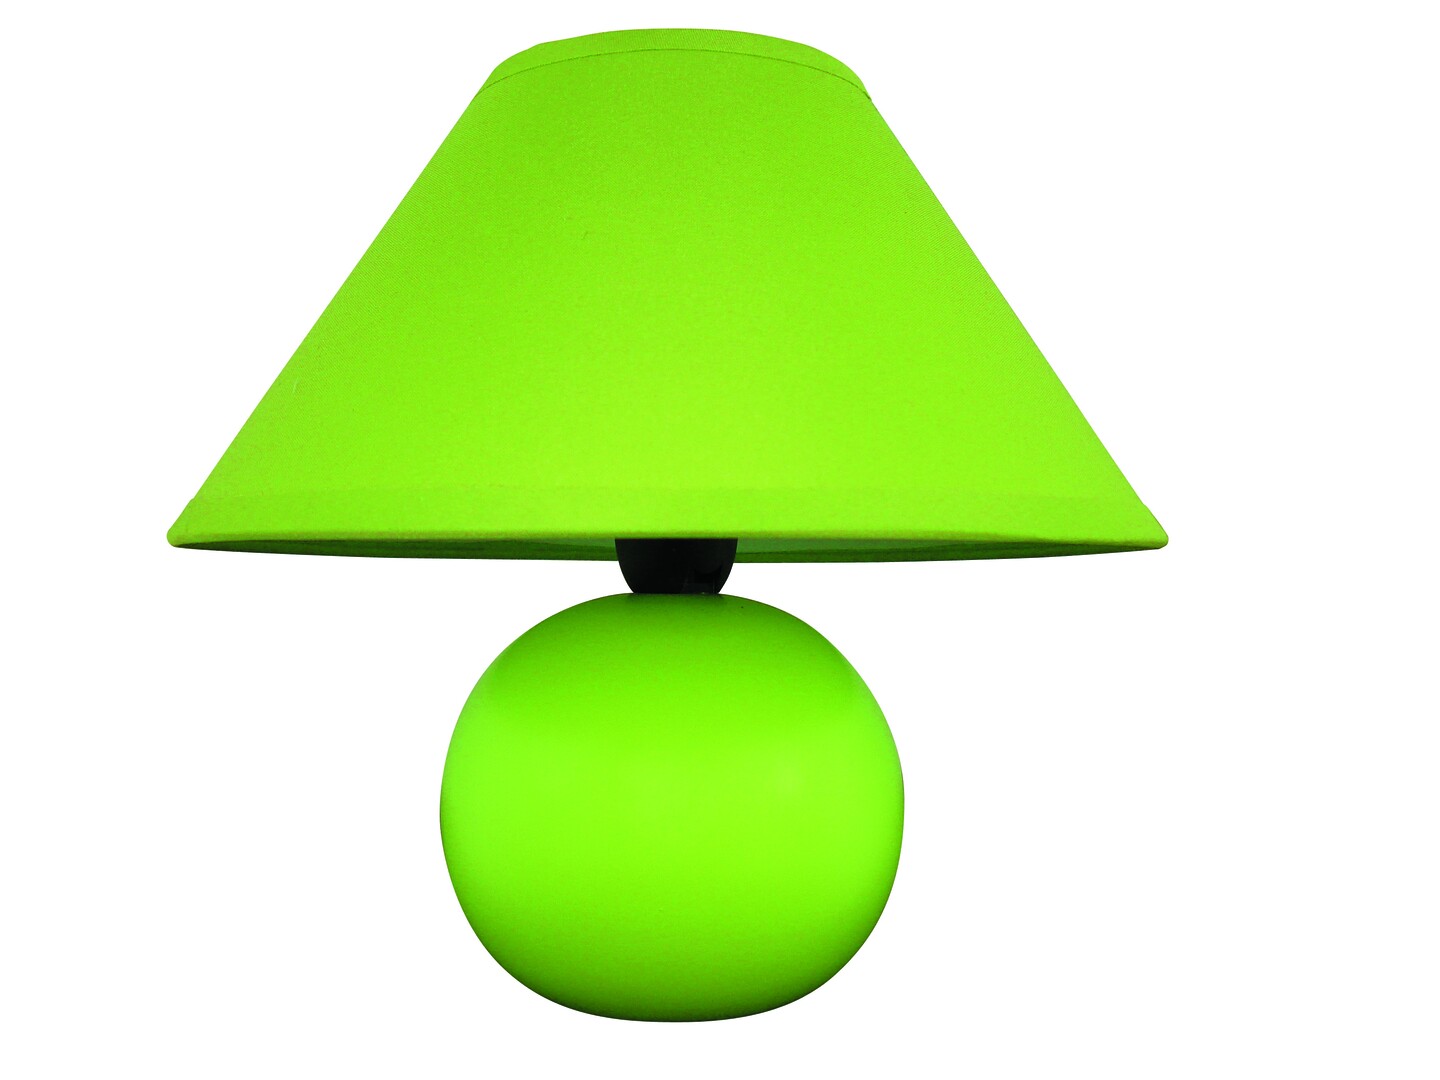 Tischleuchte Ariel 4907, E14, Keramik, grün, rund, Standard, ø200mm